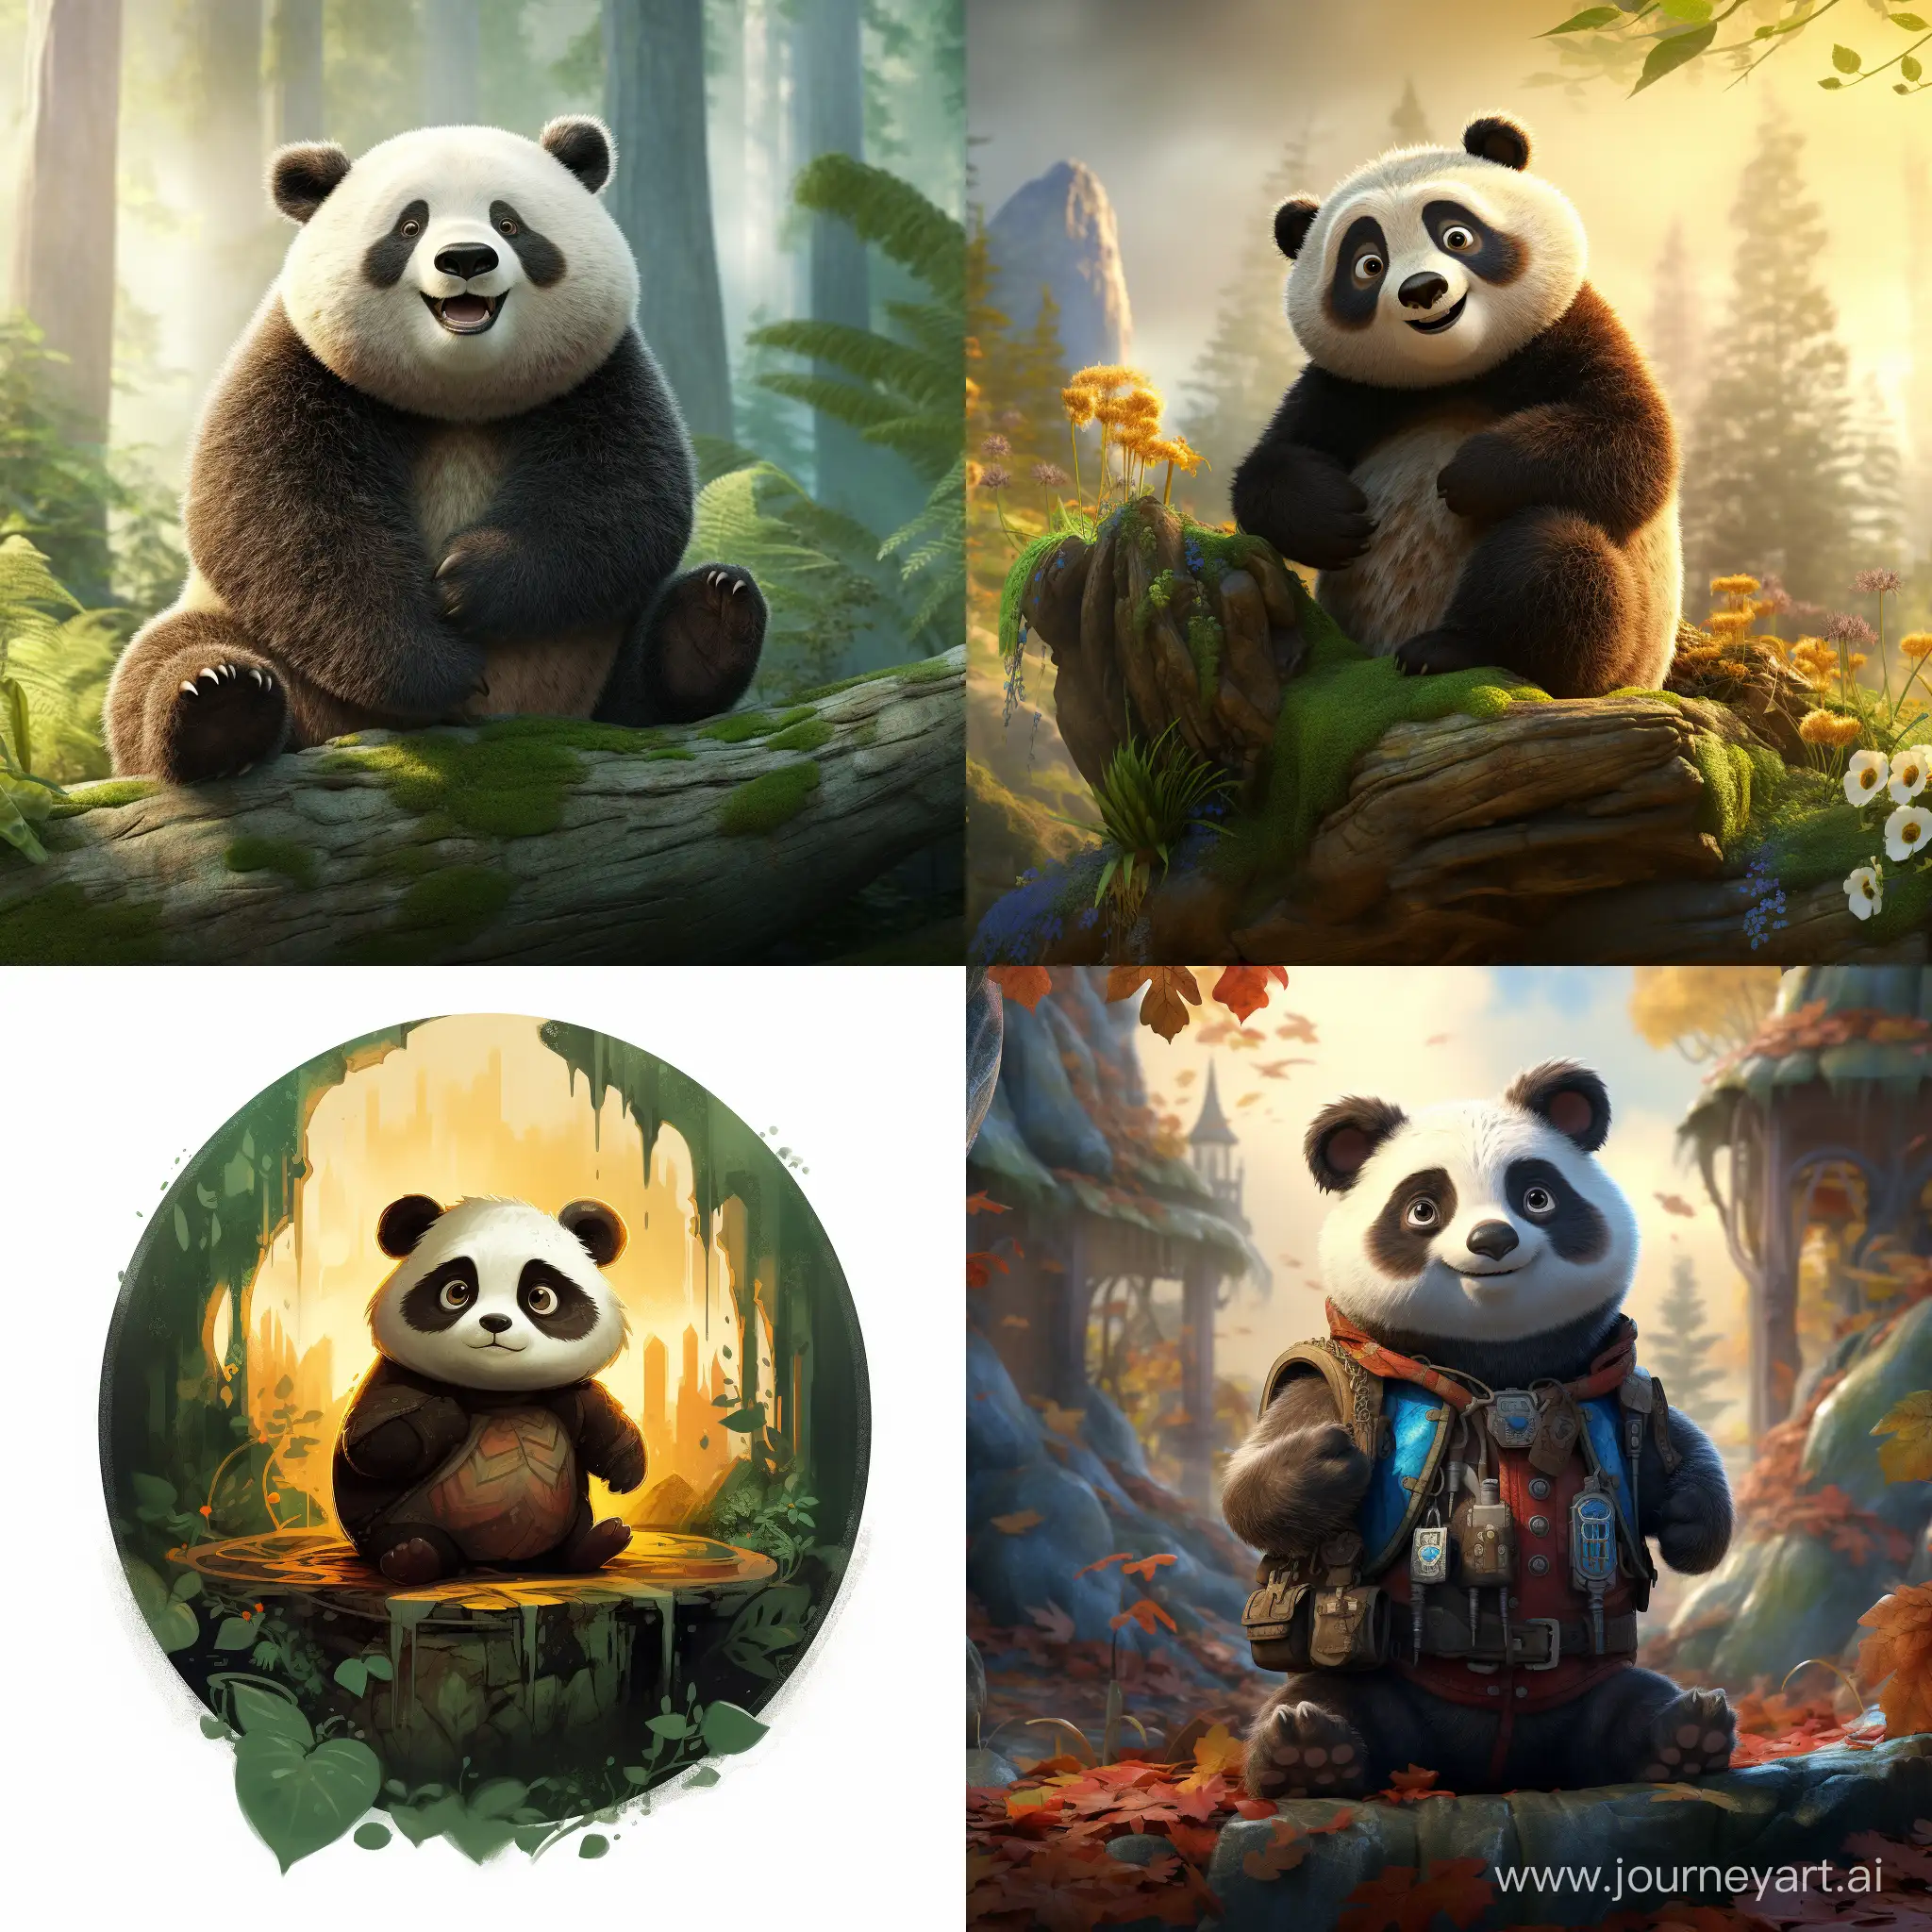 Po the panda posing